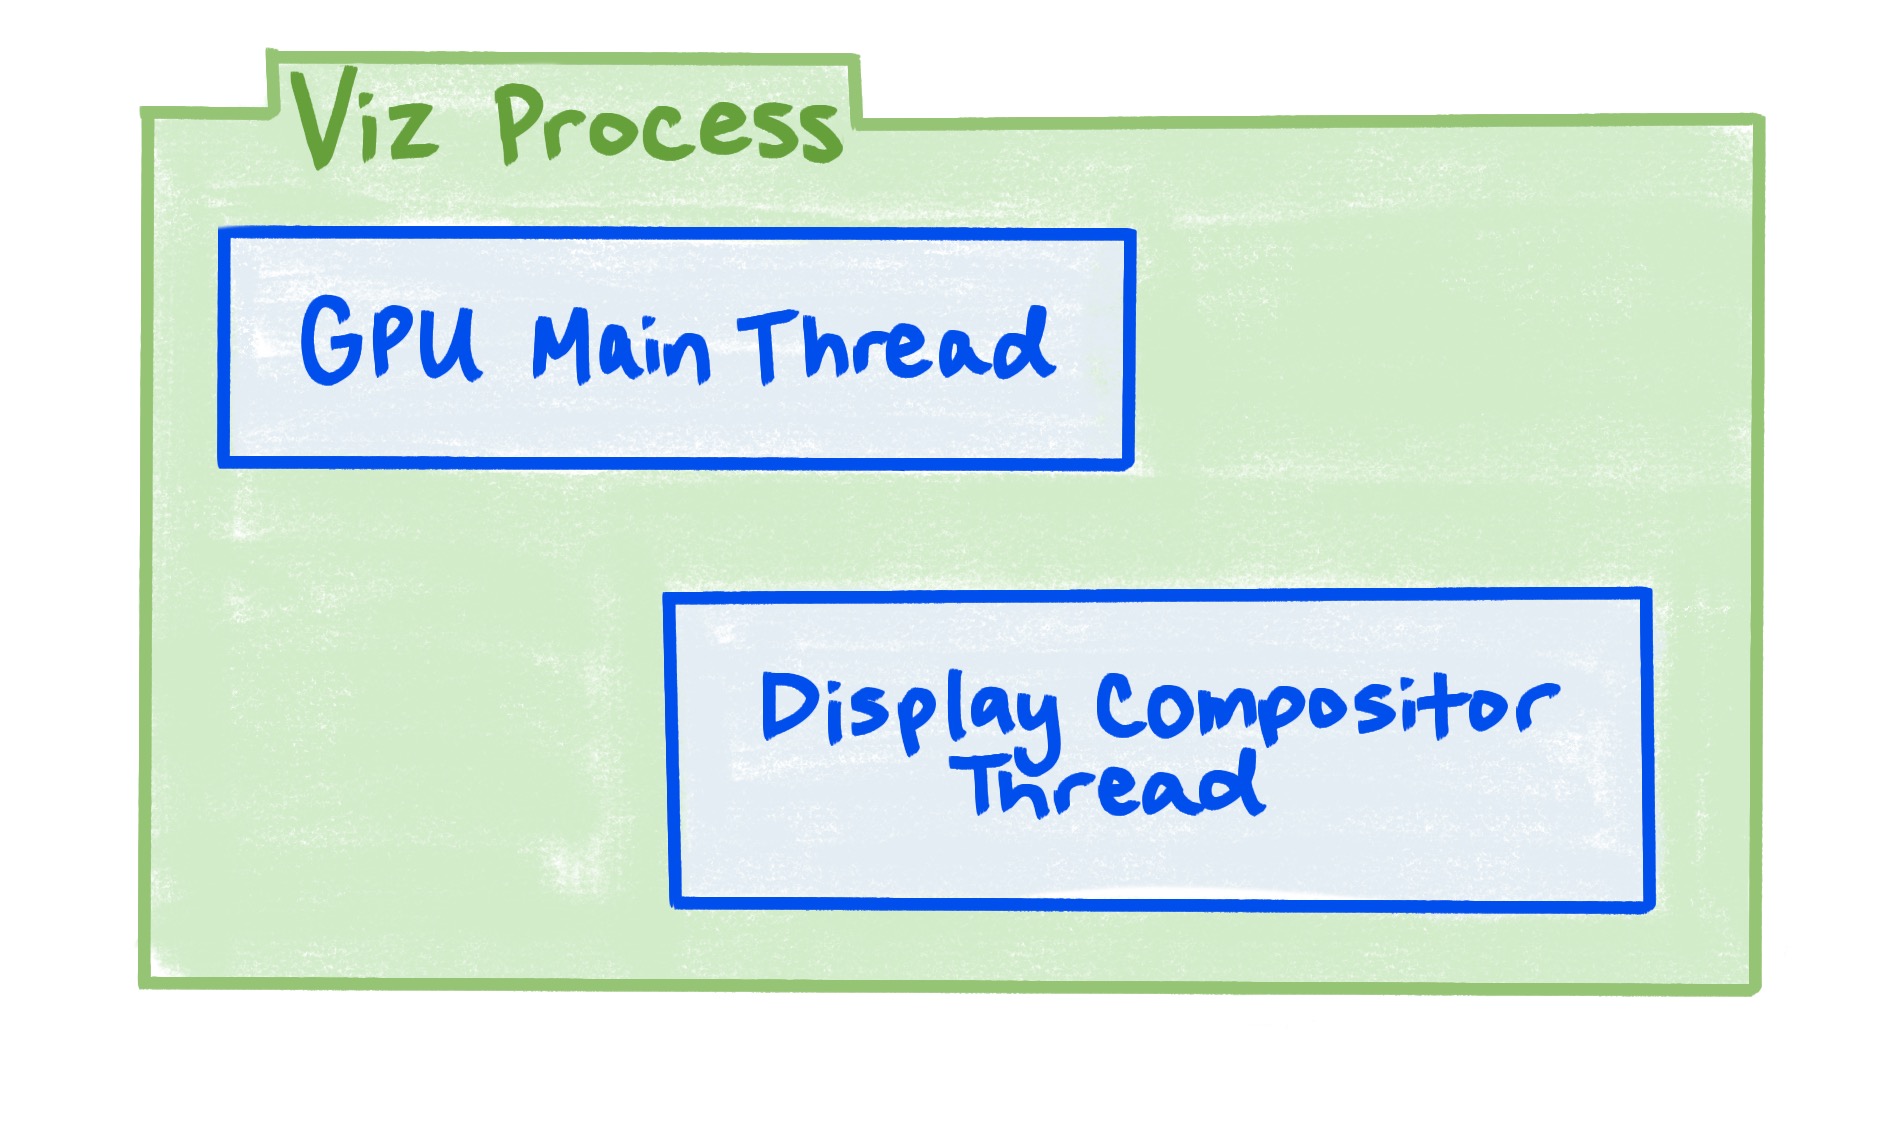 แผนภาพที่แสดงให้เห็นว่ากระบวนการของ Viz ประกอบด้วยเทรดหลักของ GPU และเทรดตัวจัดวางองค์ประกอบจอแสดงผล